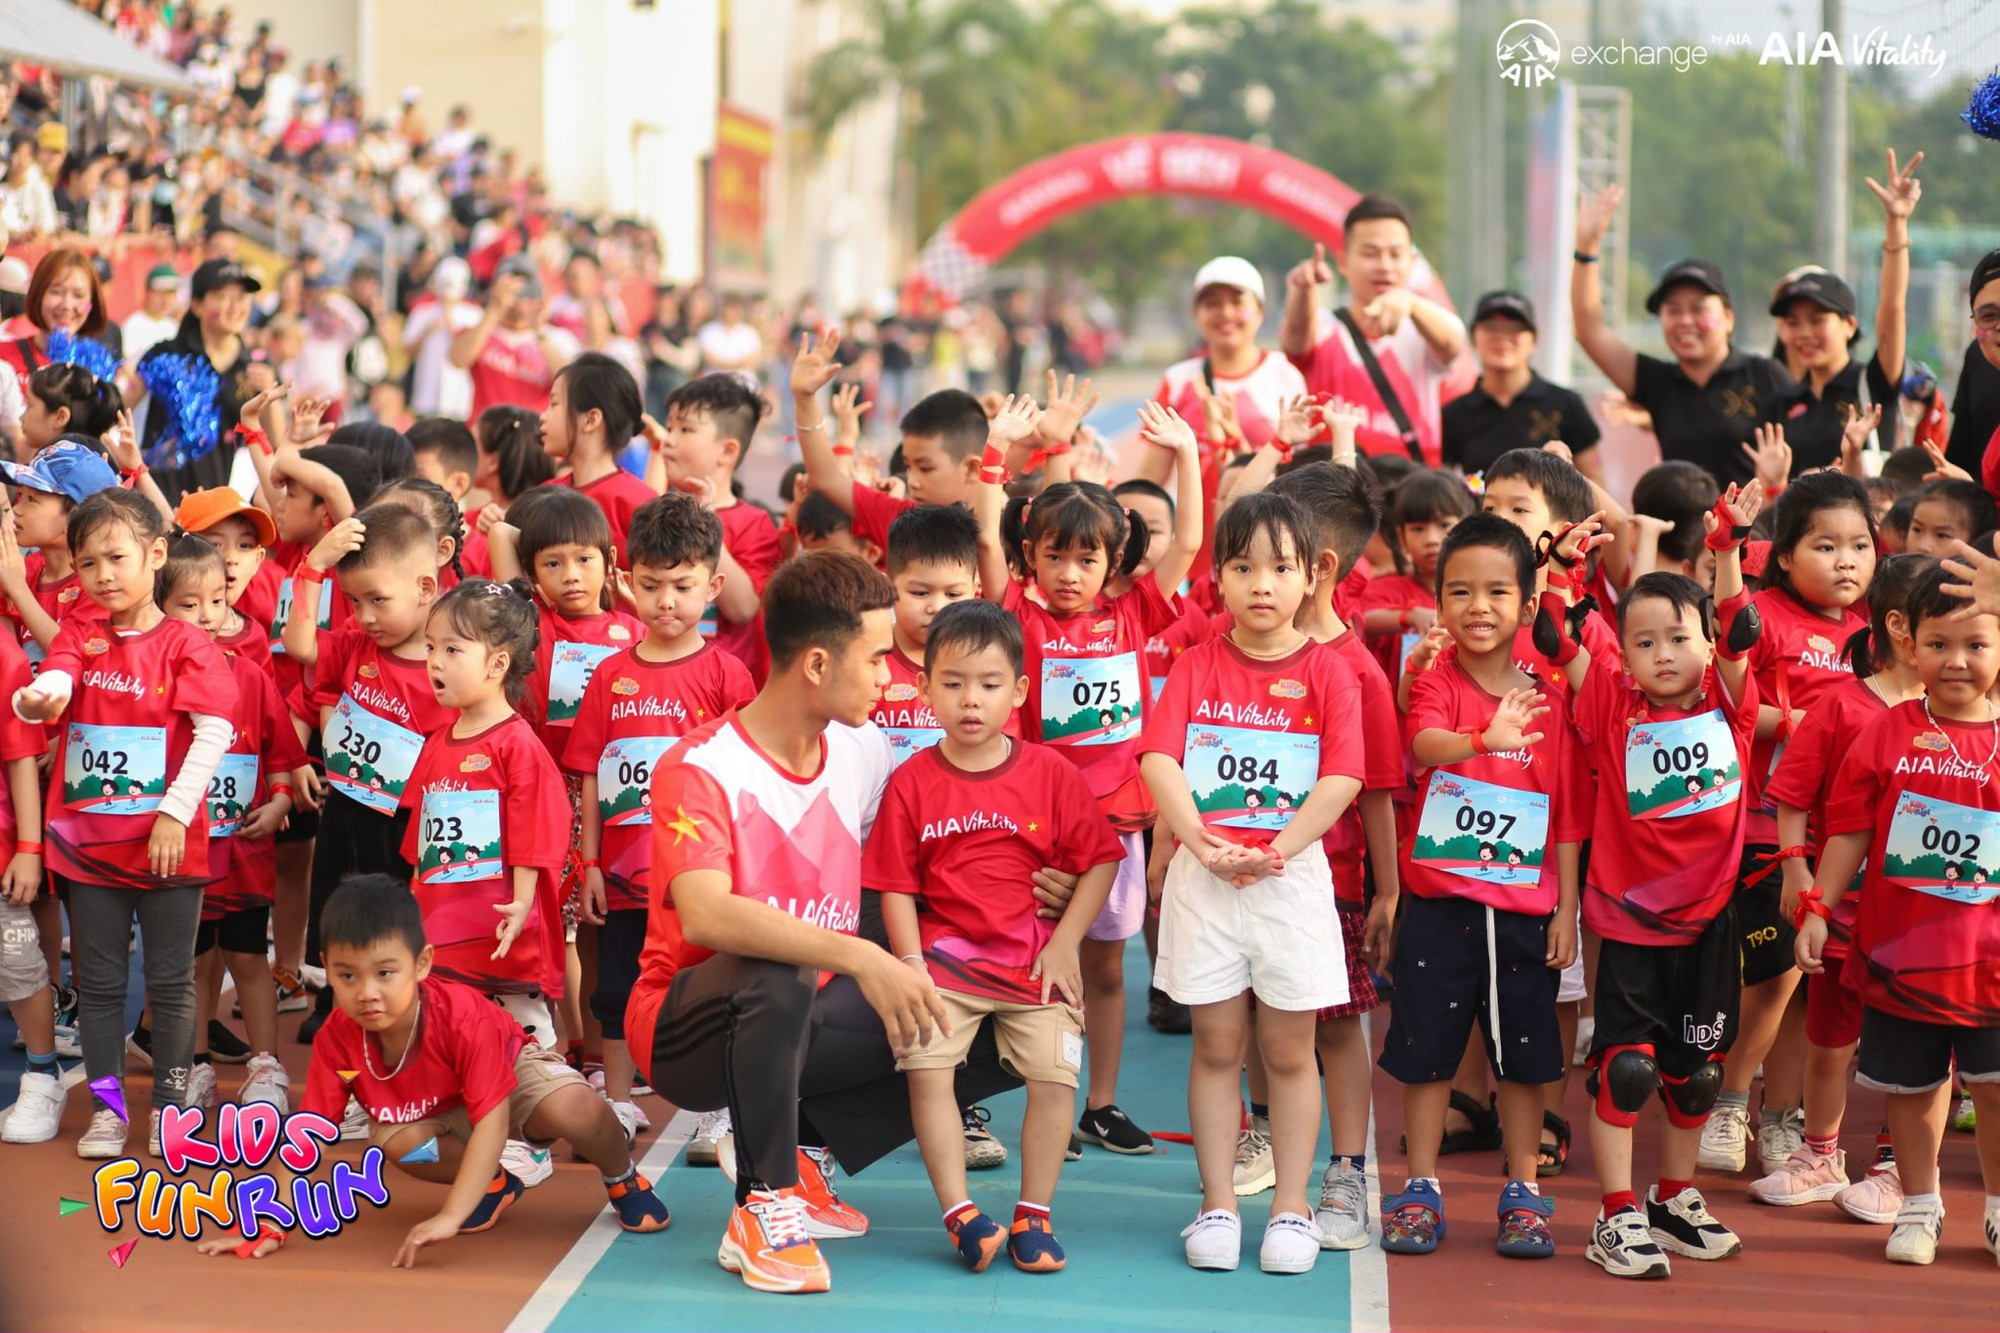 AIA Việt Nam mang đến sân chơi bổ ích cho các em nhỏ thông qua chuỗi sự kiện "Kids Fun Run"- Ảnh 5.